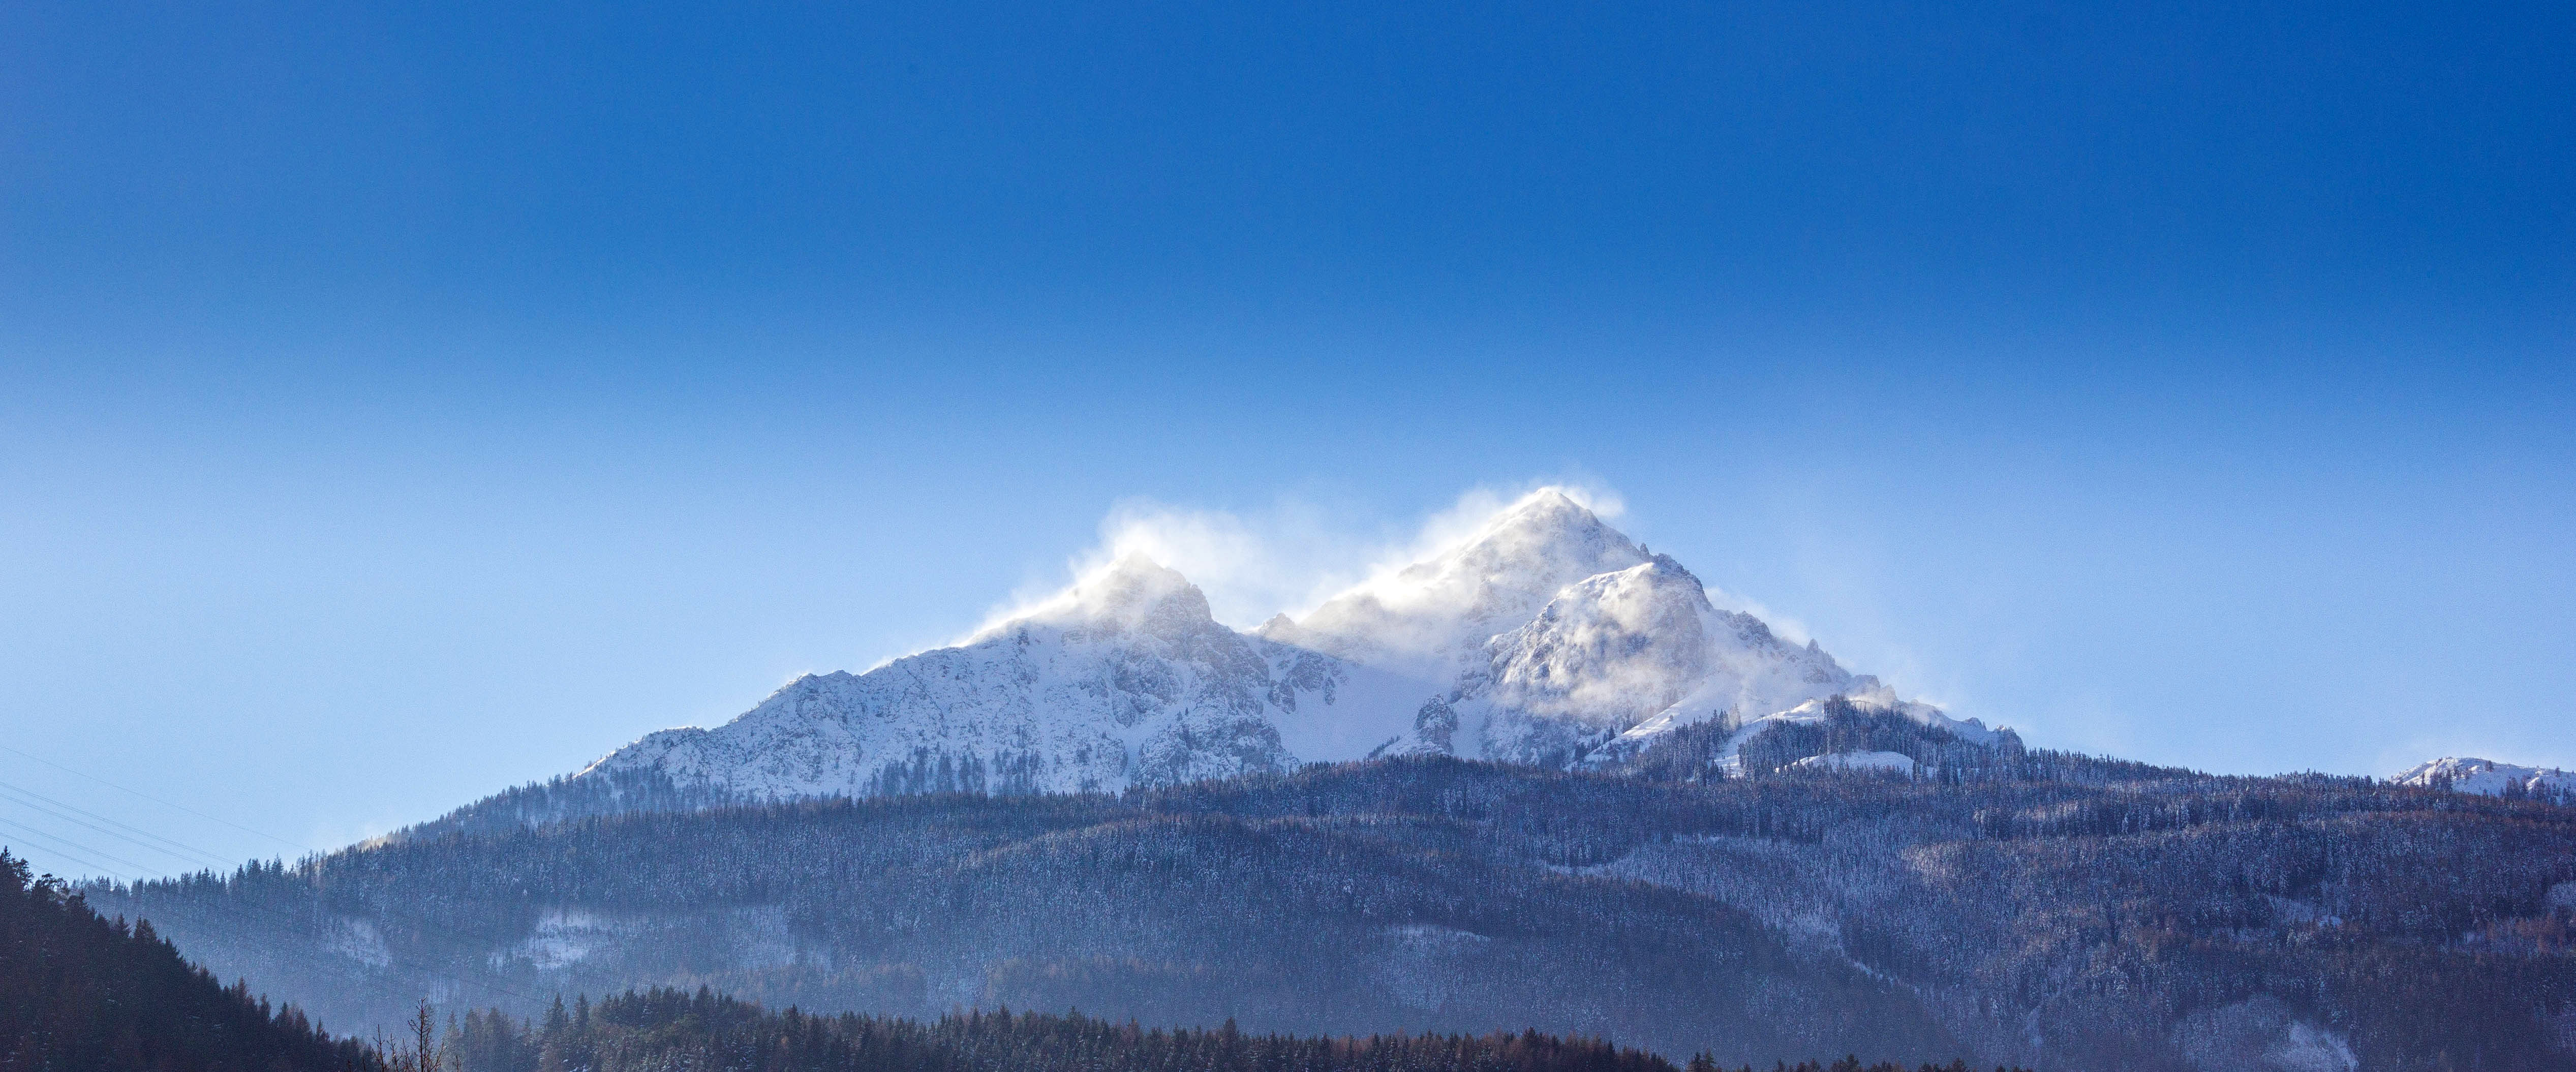 Snow capped mountain peaks in Steinbockweg Innsbruck, Austria image ...